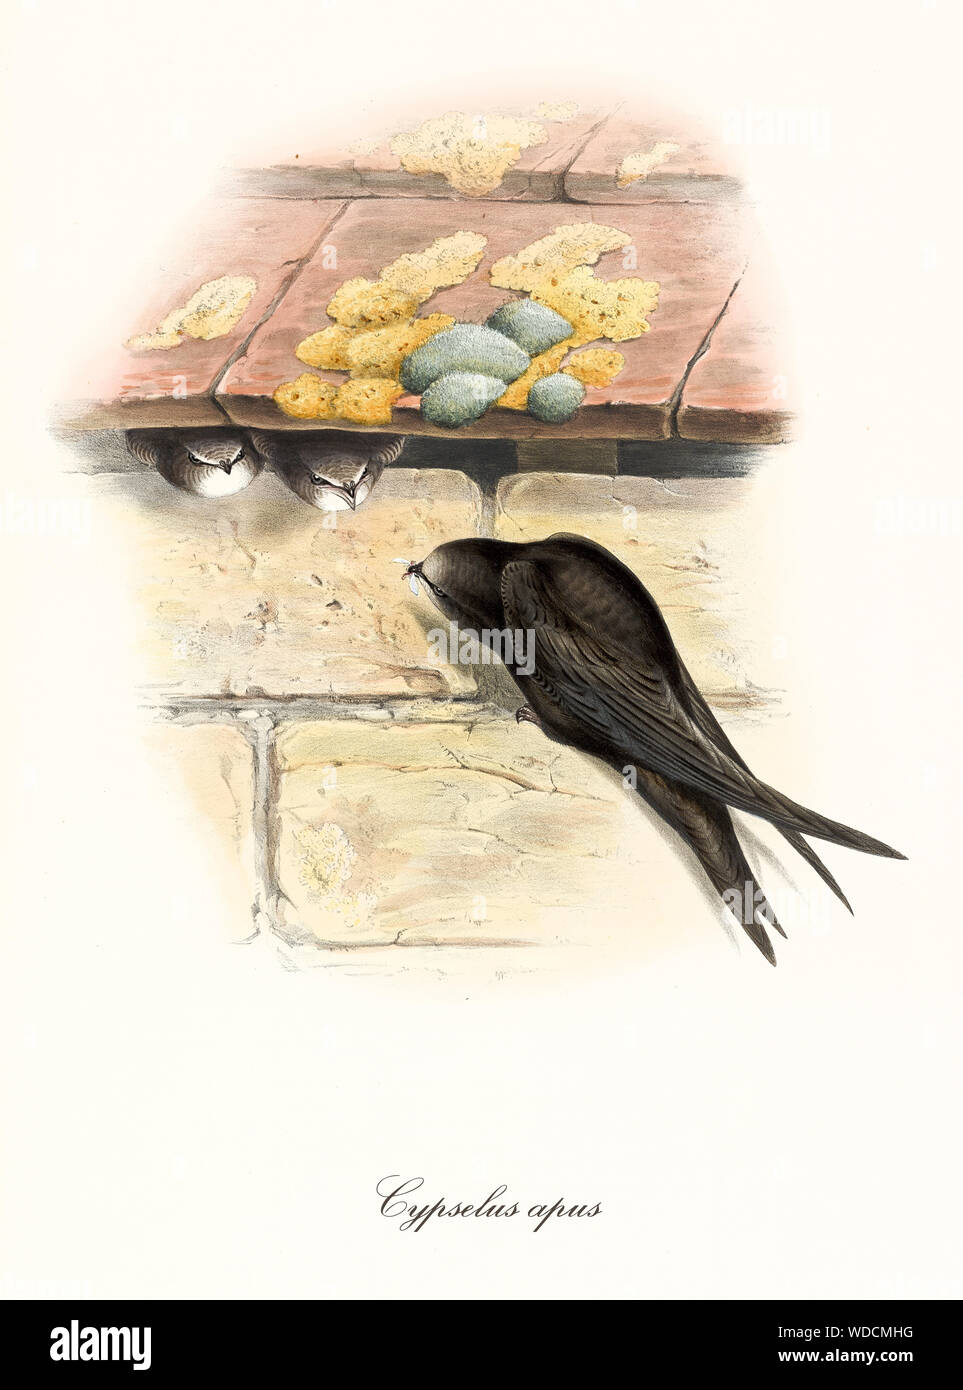 Black Bird portando cibo al suo nido fatto sotto alcune tegole del tetto mentre i suoi figli sono in attesa. Vecchia illustrazione colorata del Comune (Swift Apus apus). Da John Gould publ. In London 1862 - 1873 Foto Stock